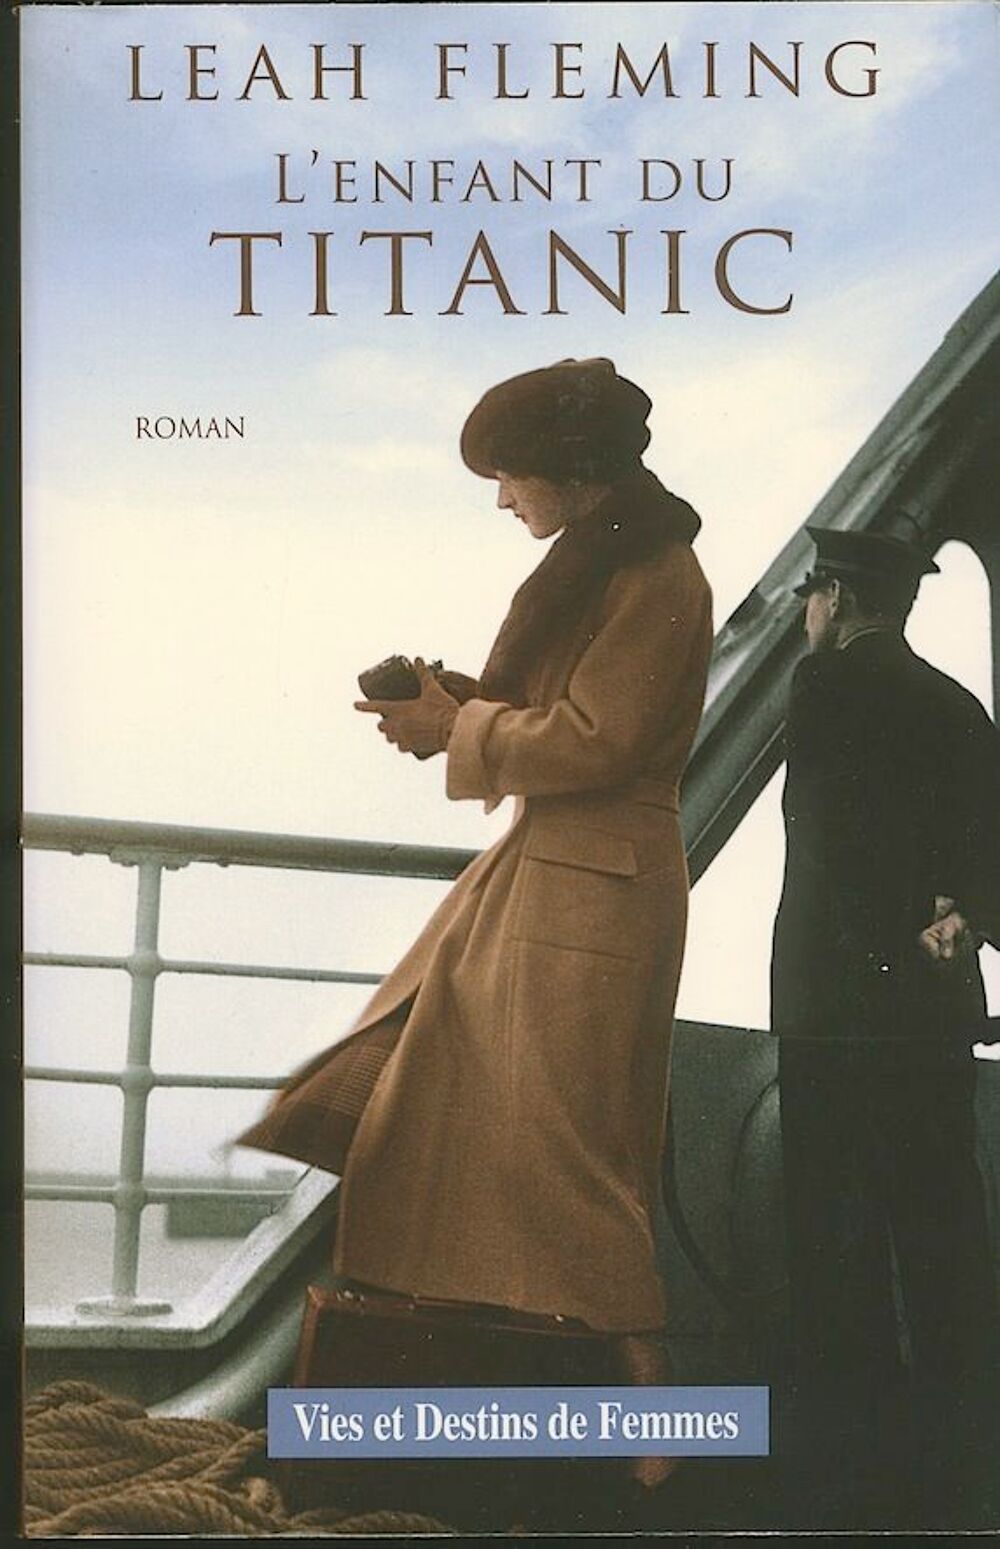 L'ENFANT DU TITANIC 
Roman de Leah Fleming
Livres et BD